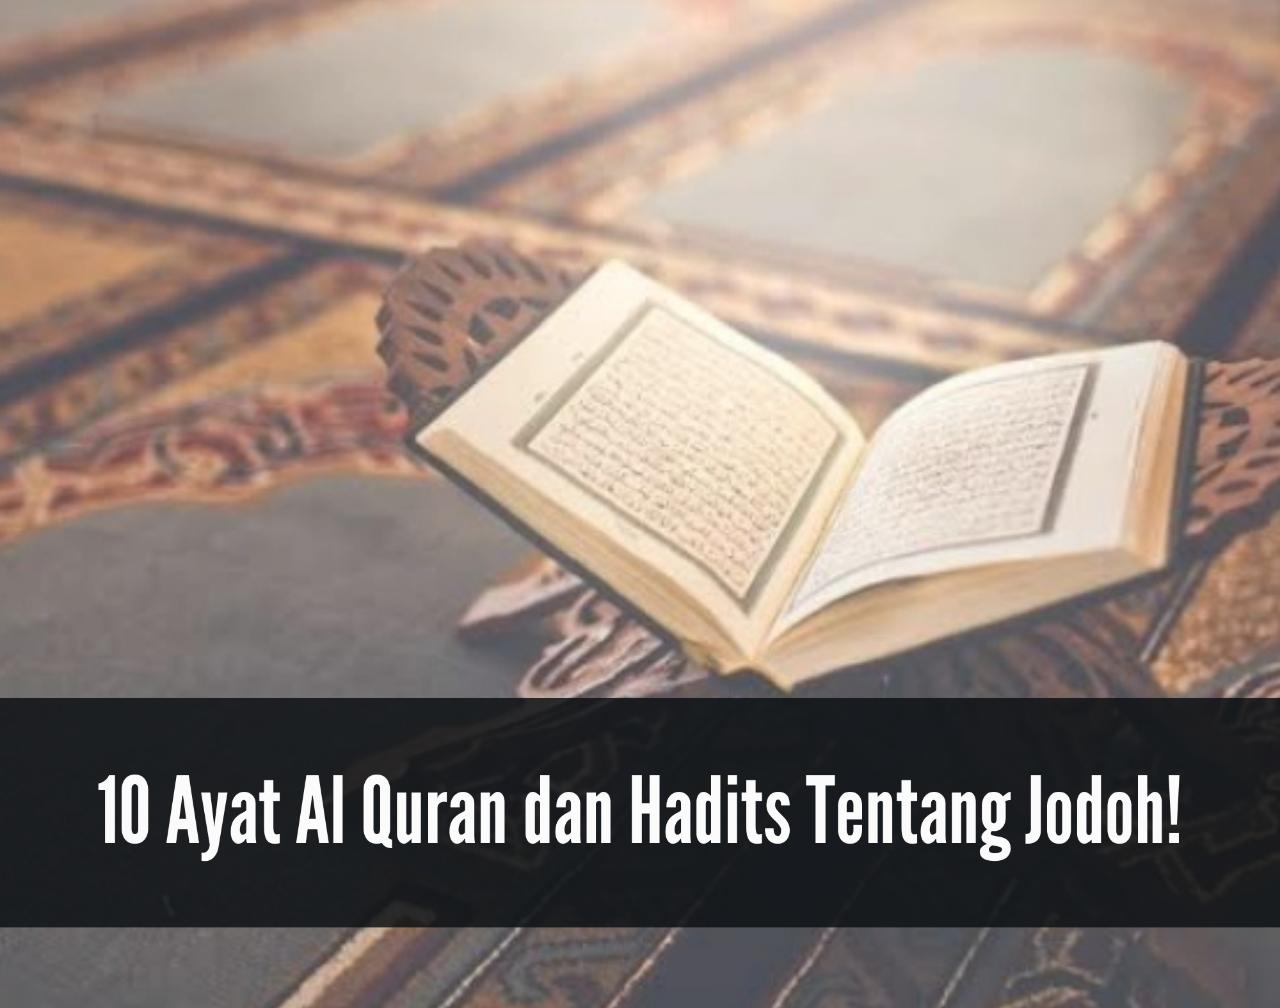 10 Ayat Al Quran dan Hadits Tentang Jodoh, Salah Satunya Merupakan Cerminan Diri